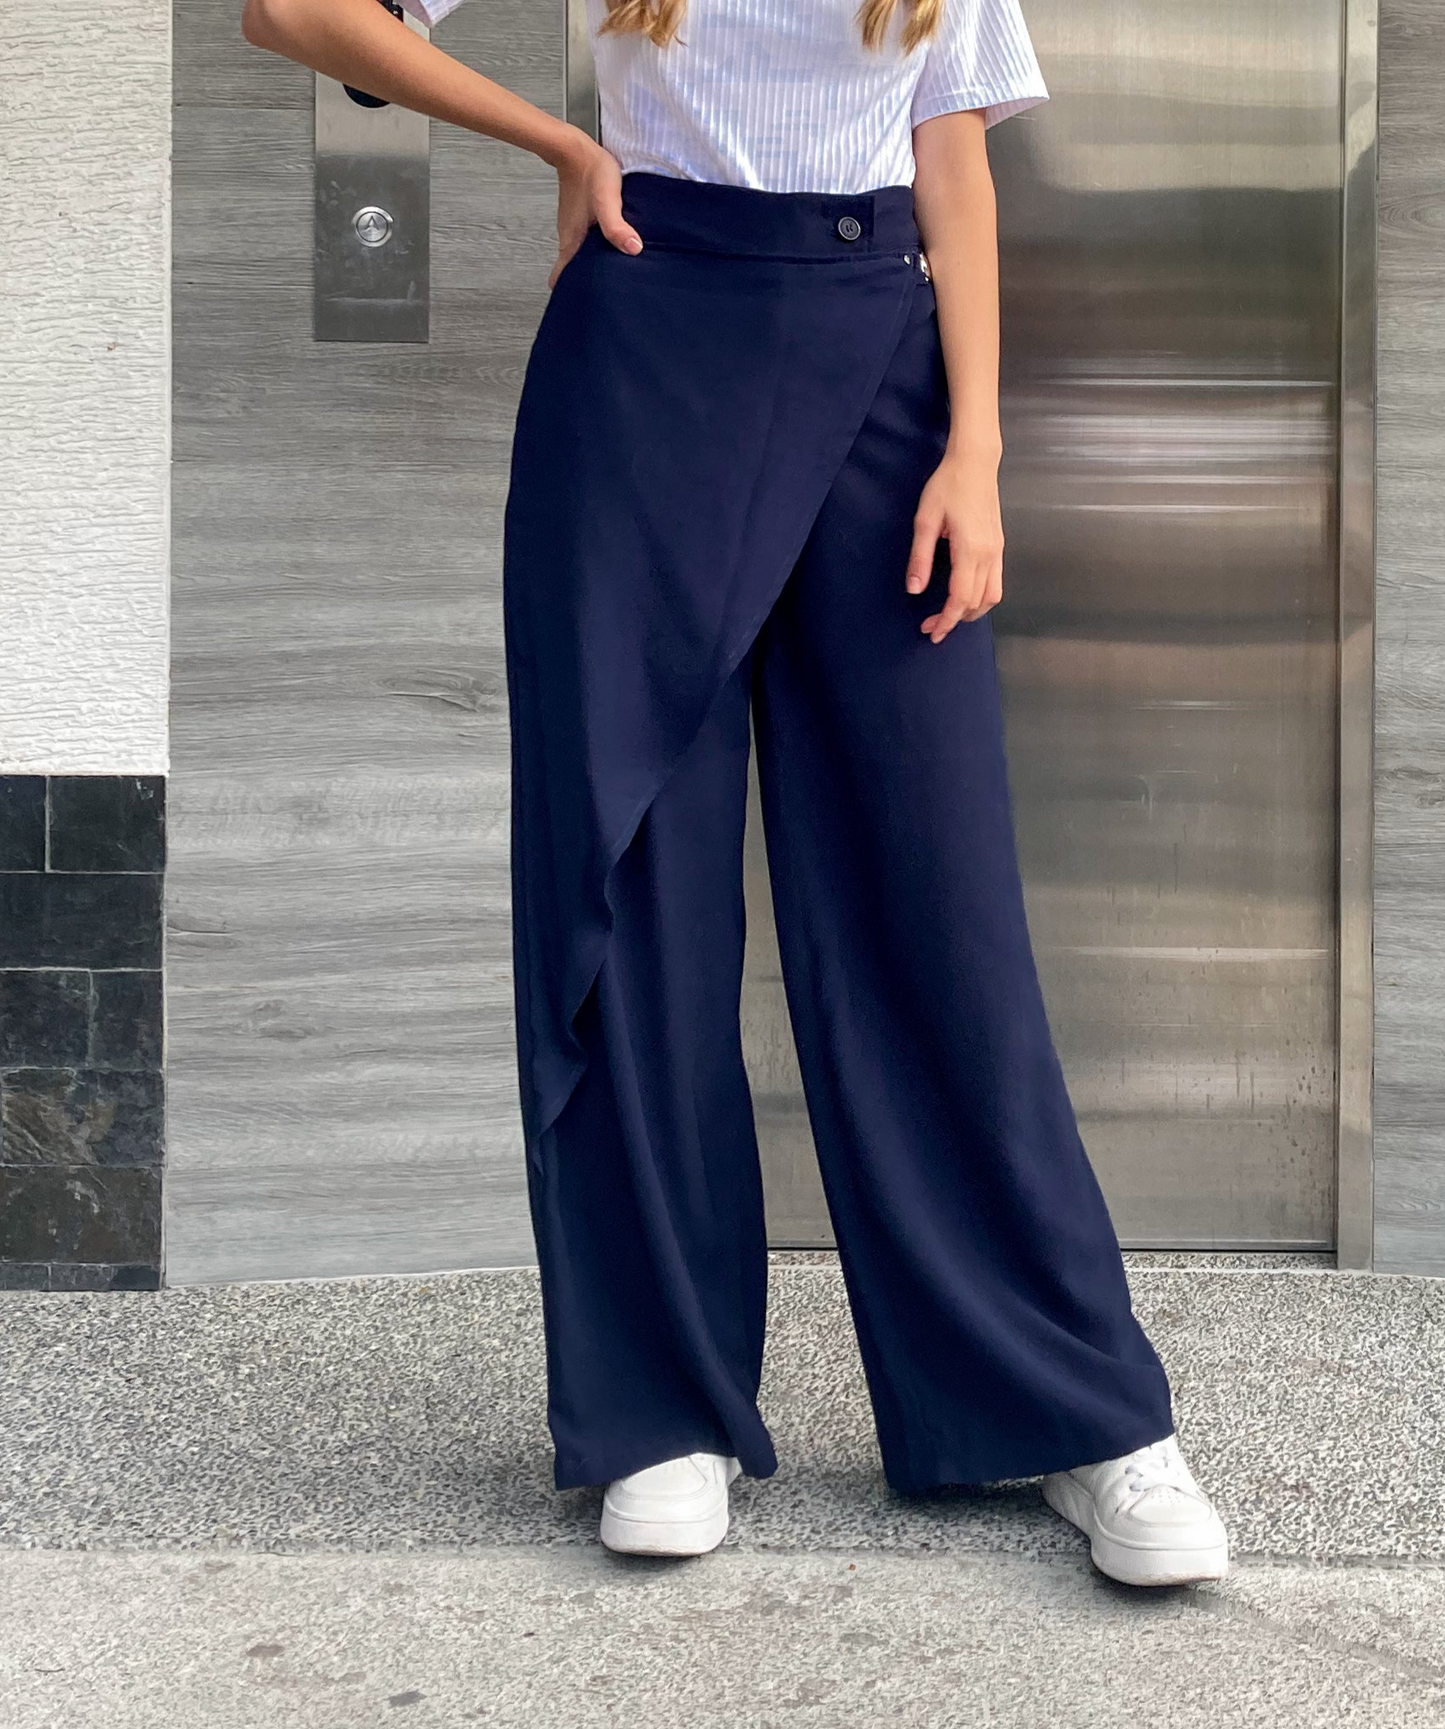 Pantalón bota ancha para mujer estilo palazzo con  una sobre falda y el detalle de la hebilla plateada, 100% Colombiano. color  azul